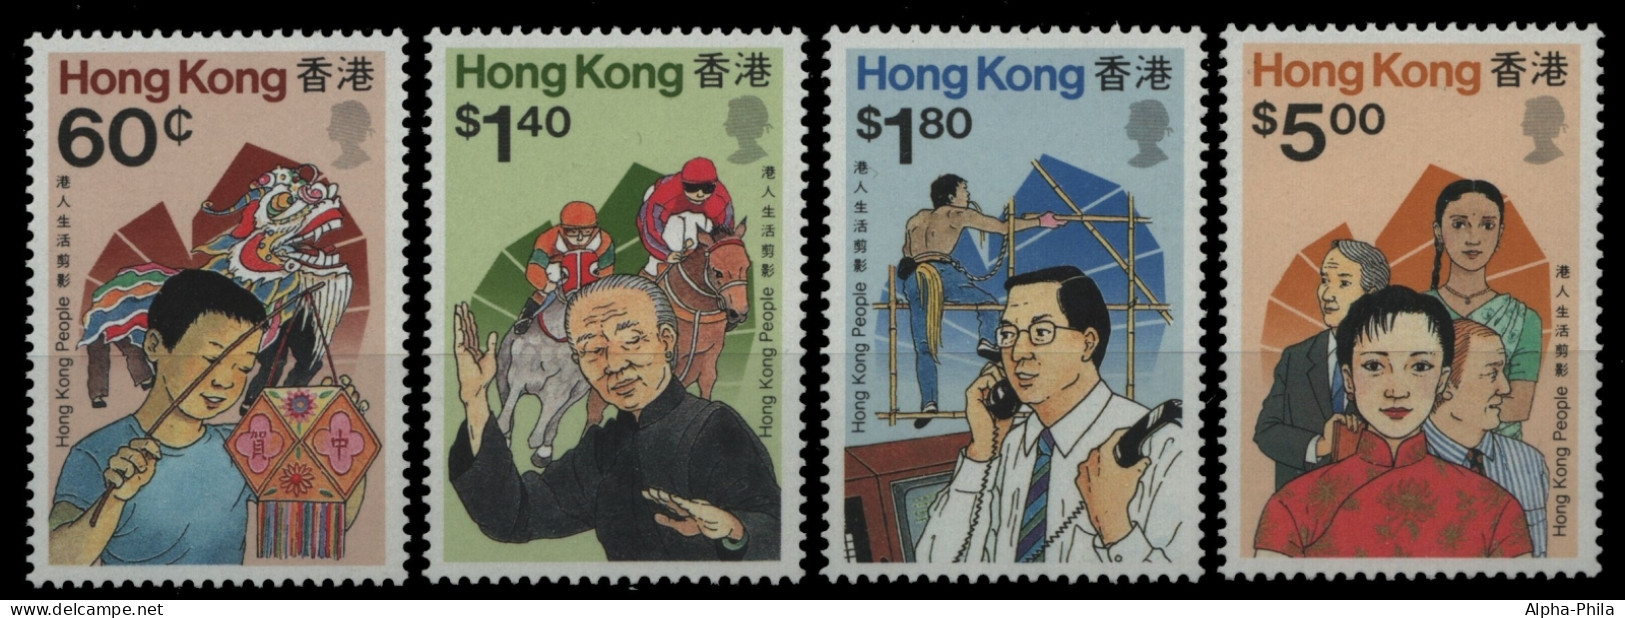 Hongkong 1989 - Mi-Nr. 567-570 ** - MNH - Leben In Hongkong - Unused Stamps